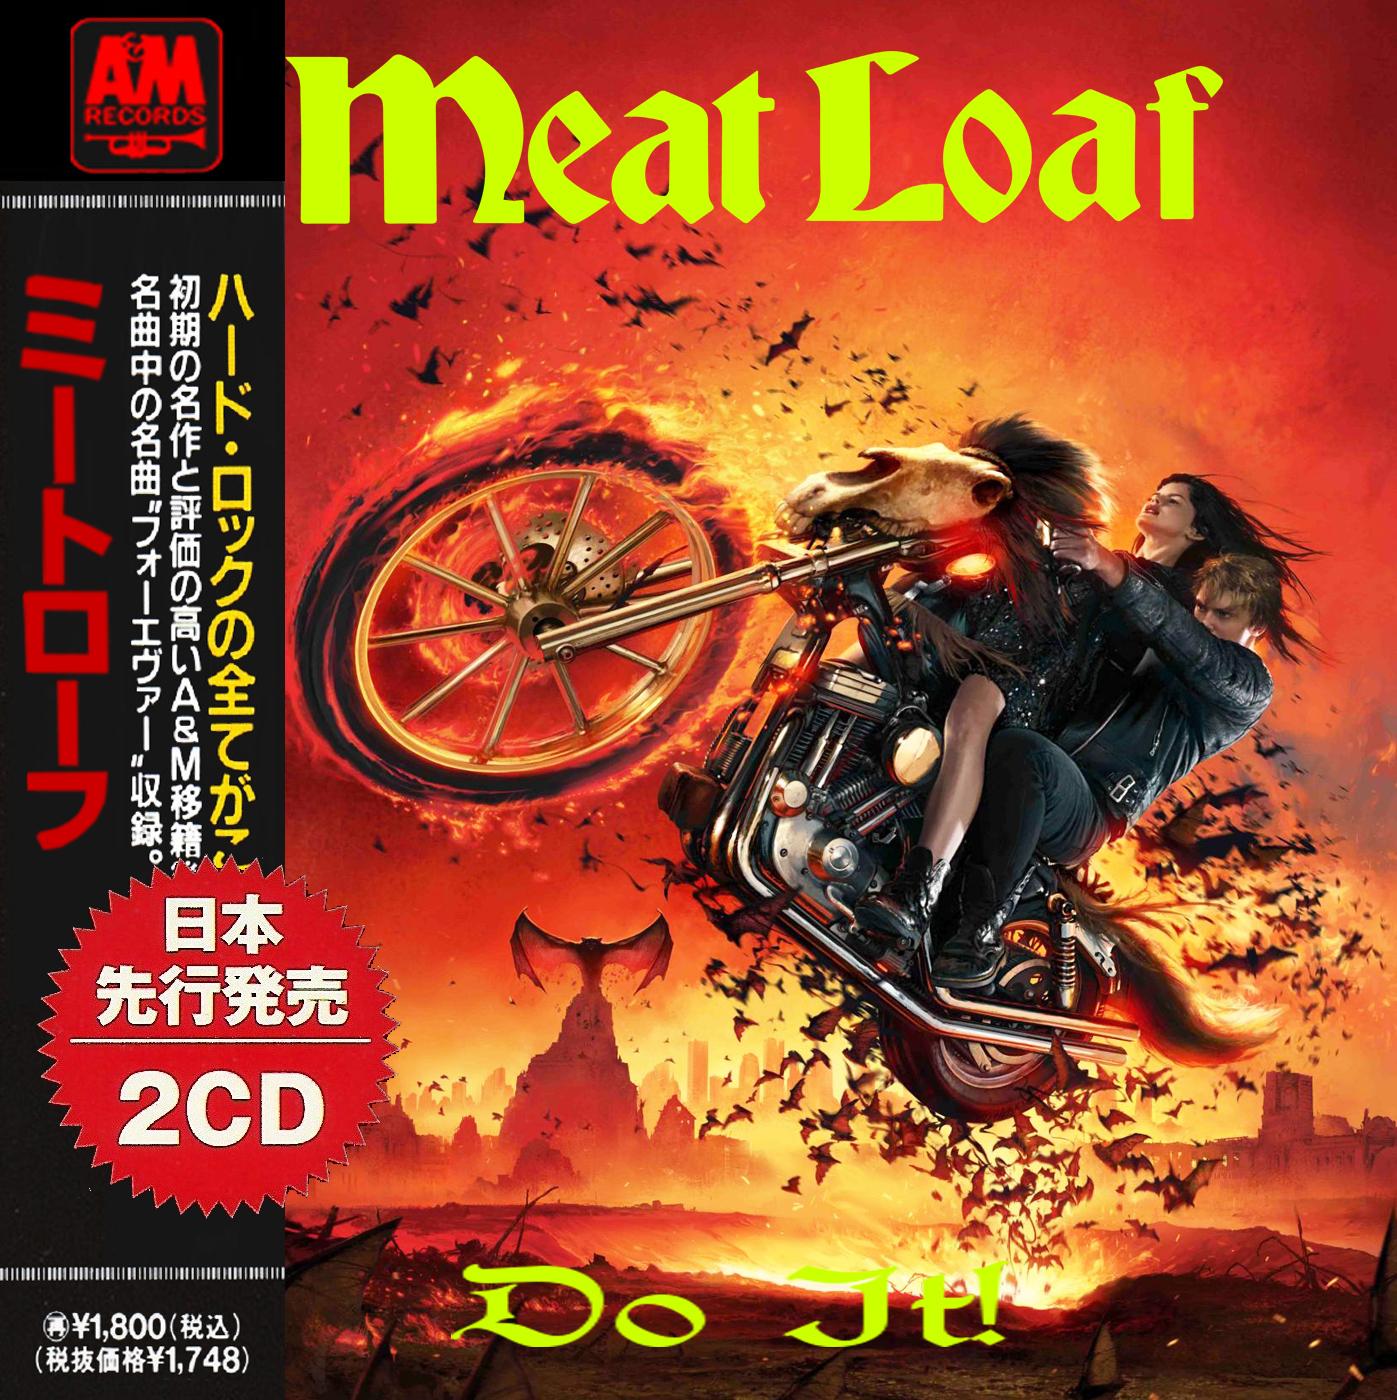 torrent meat loaf discography